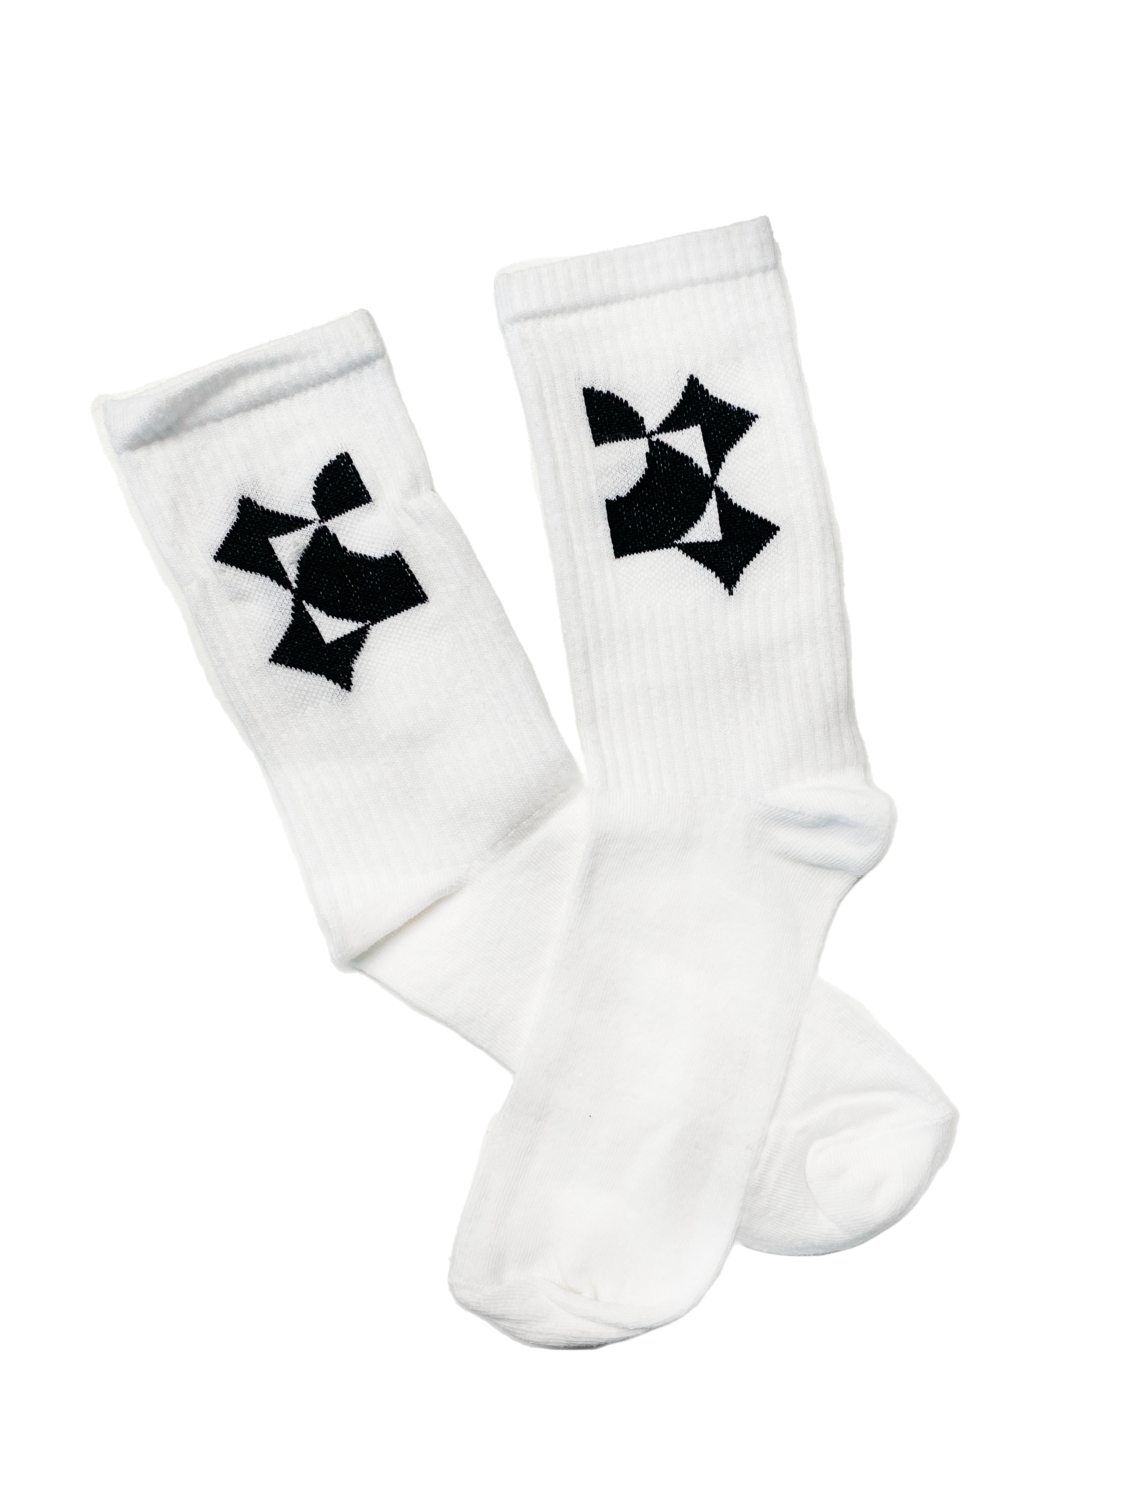 Reiz Socks - Wear with confidence (Size: 36-40)